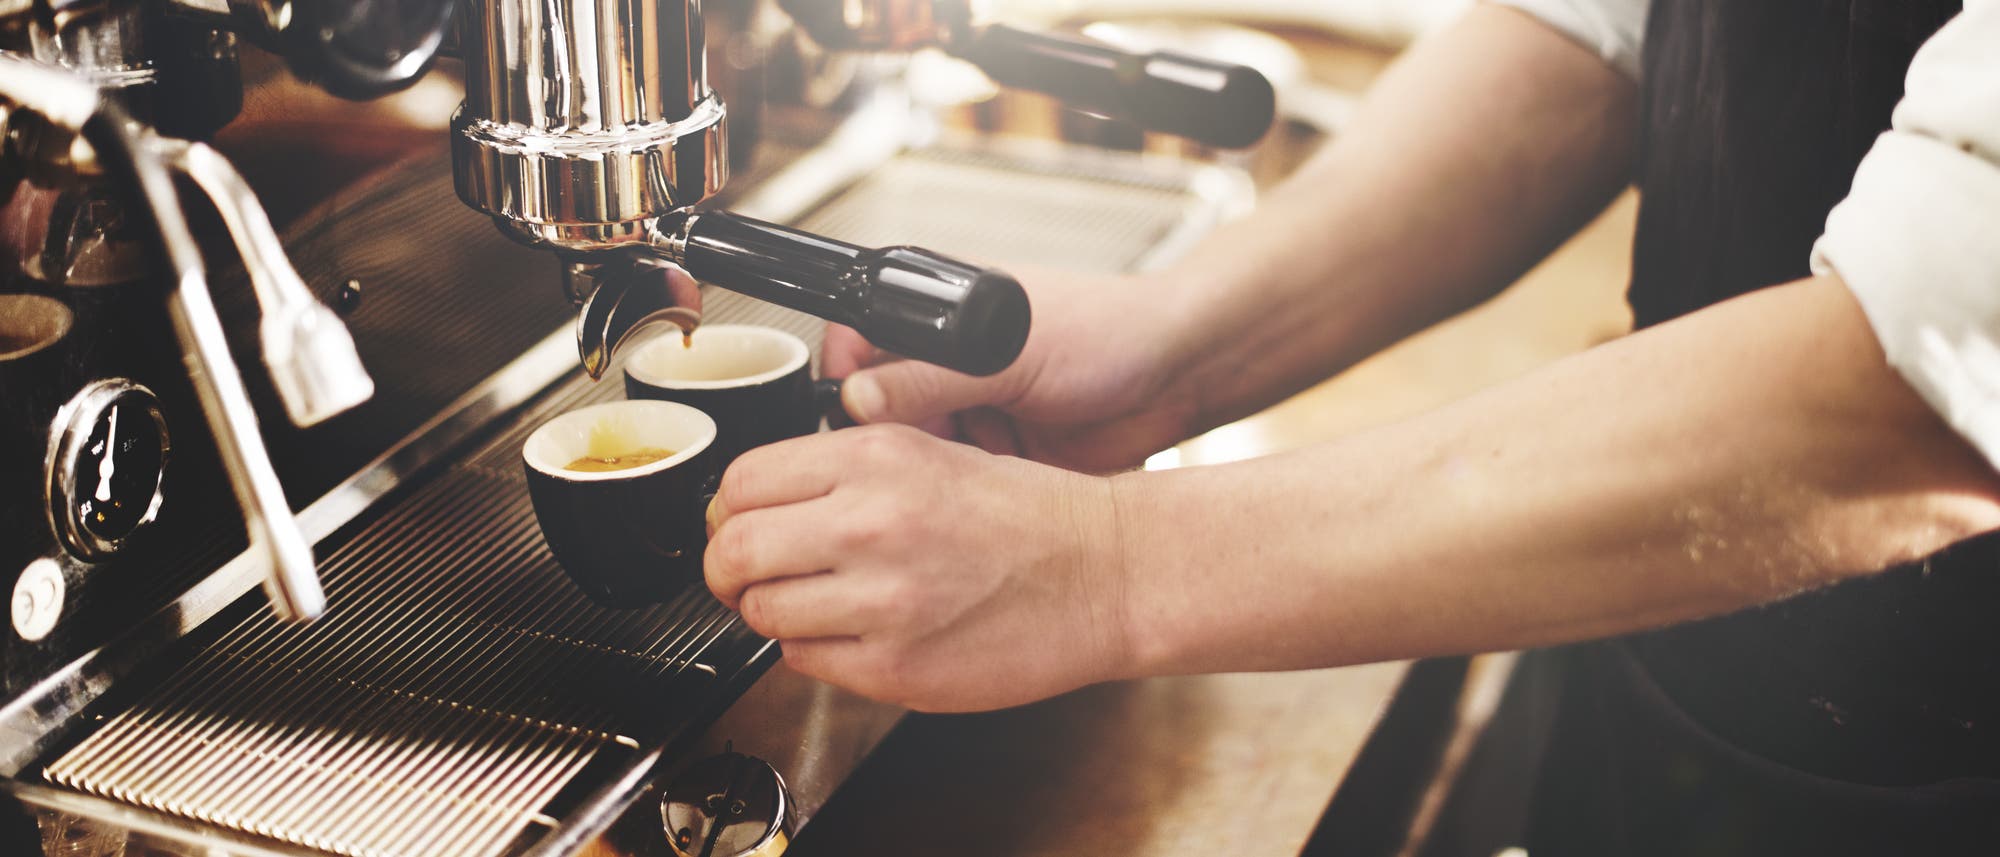 Zwei gefüllte Espressotassen unter der Düse einer Kaffeemaschine.